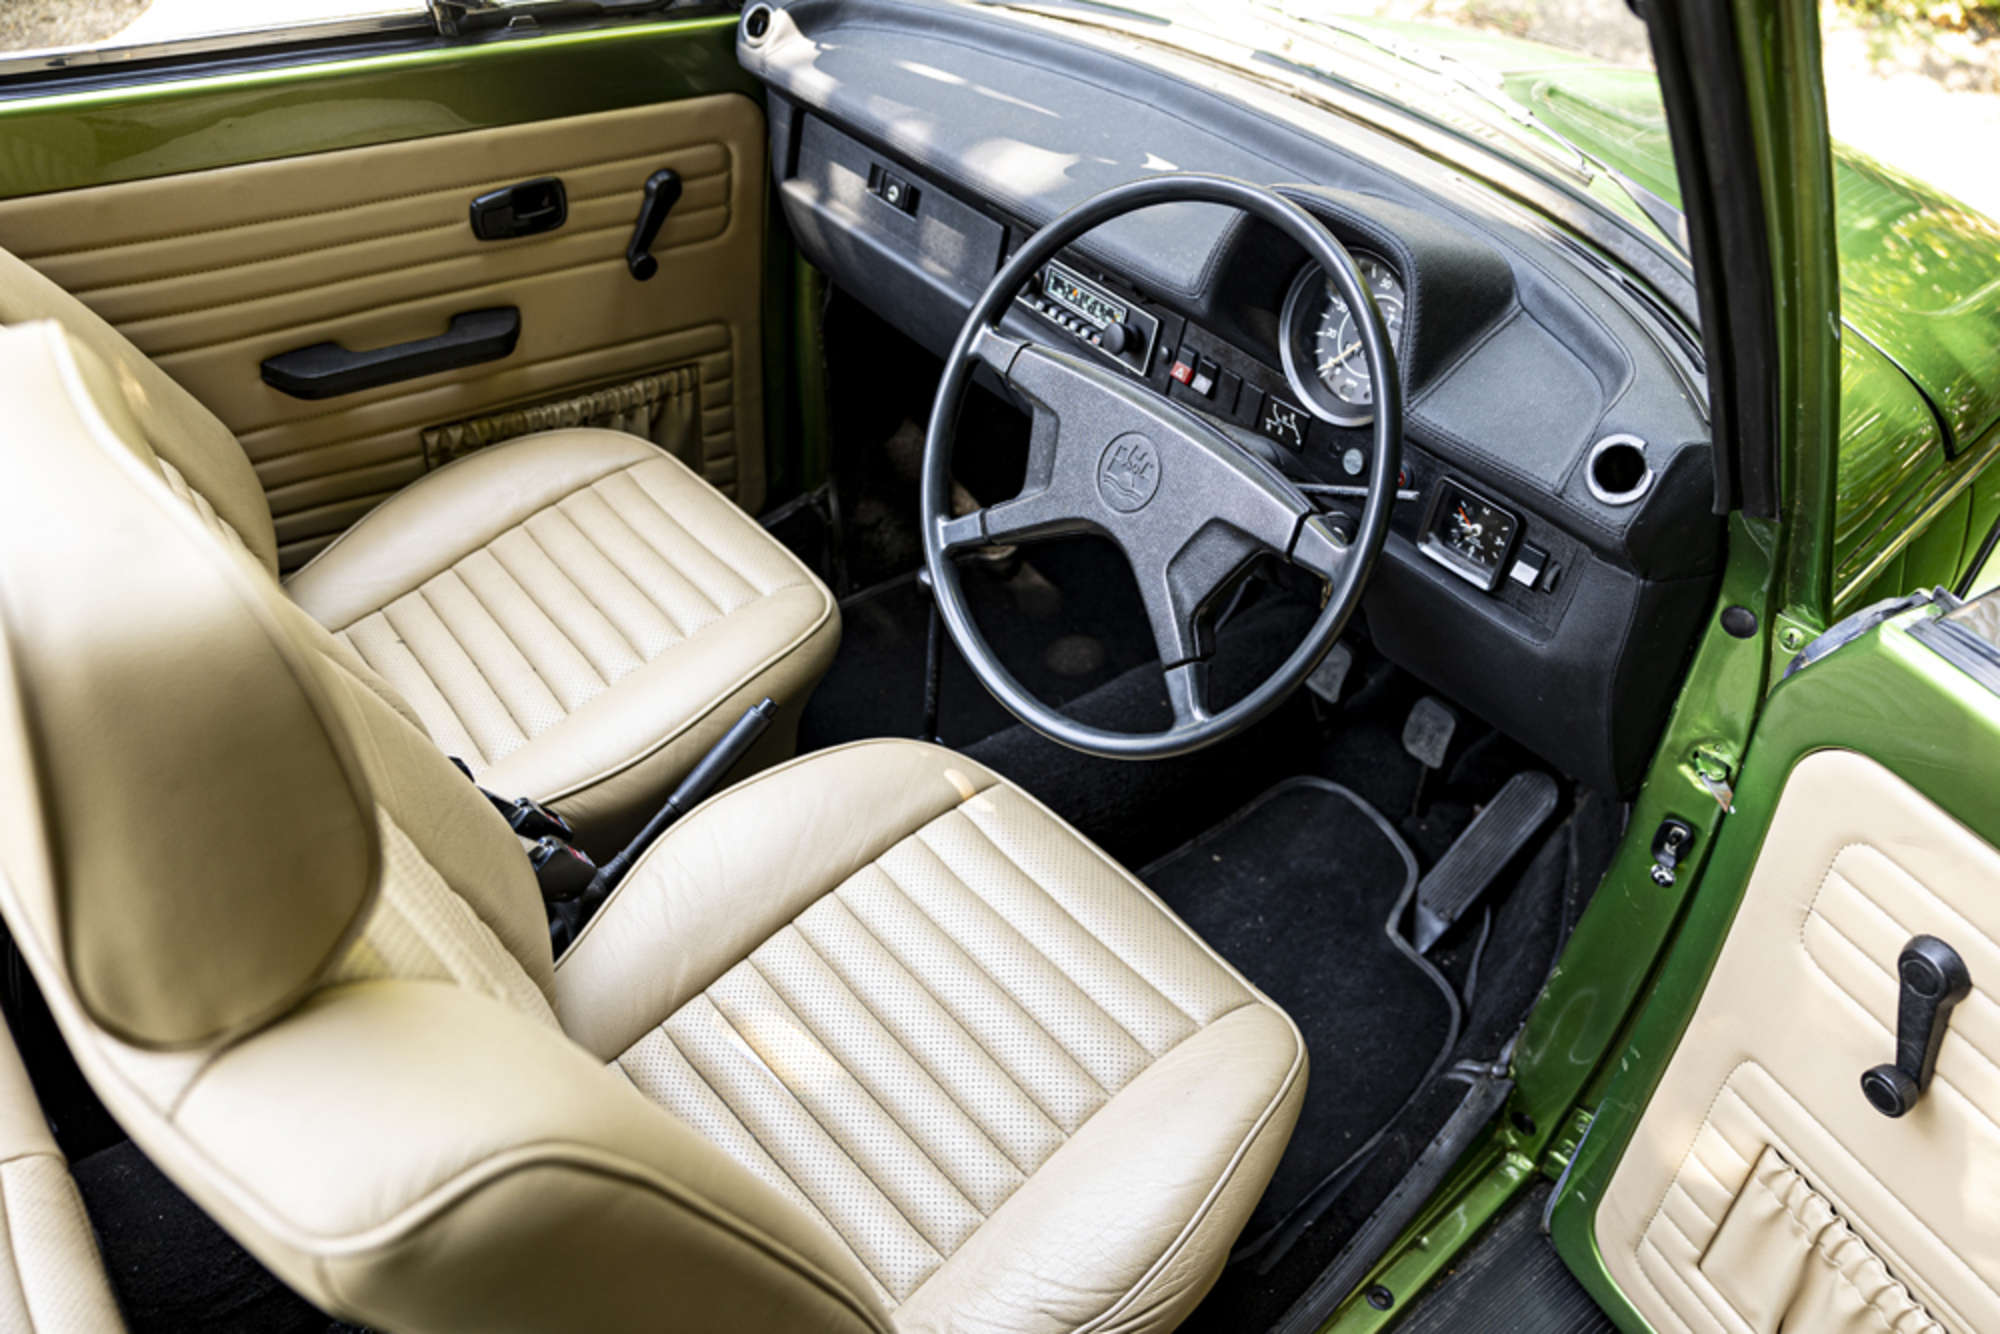 The Who Volkswagen Beetle cabrio interior